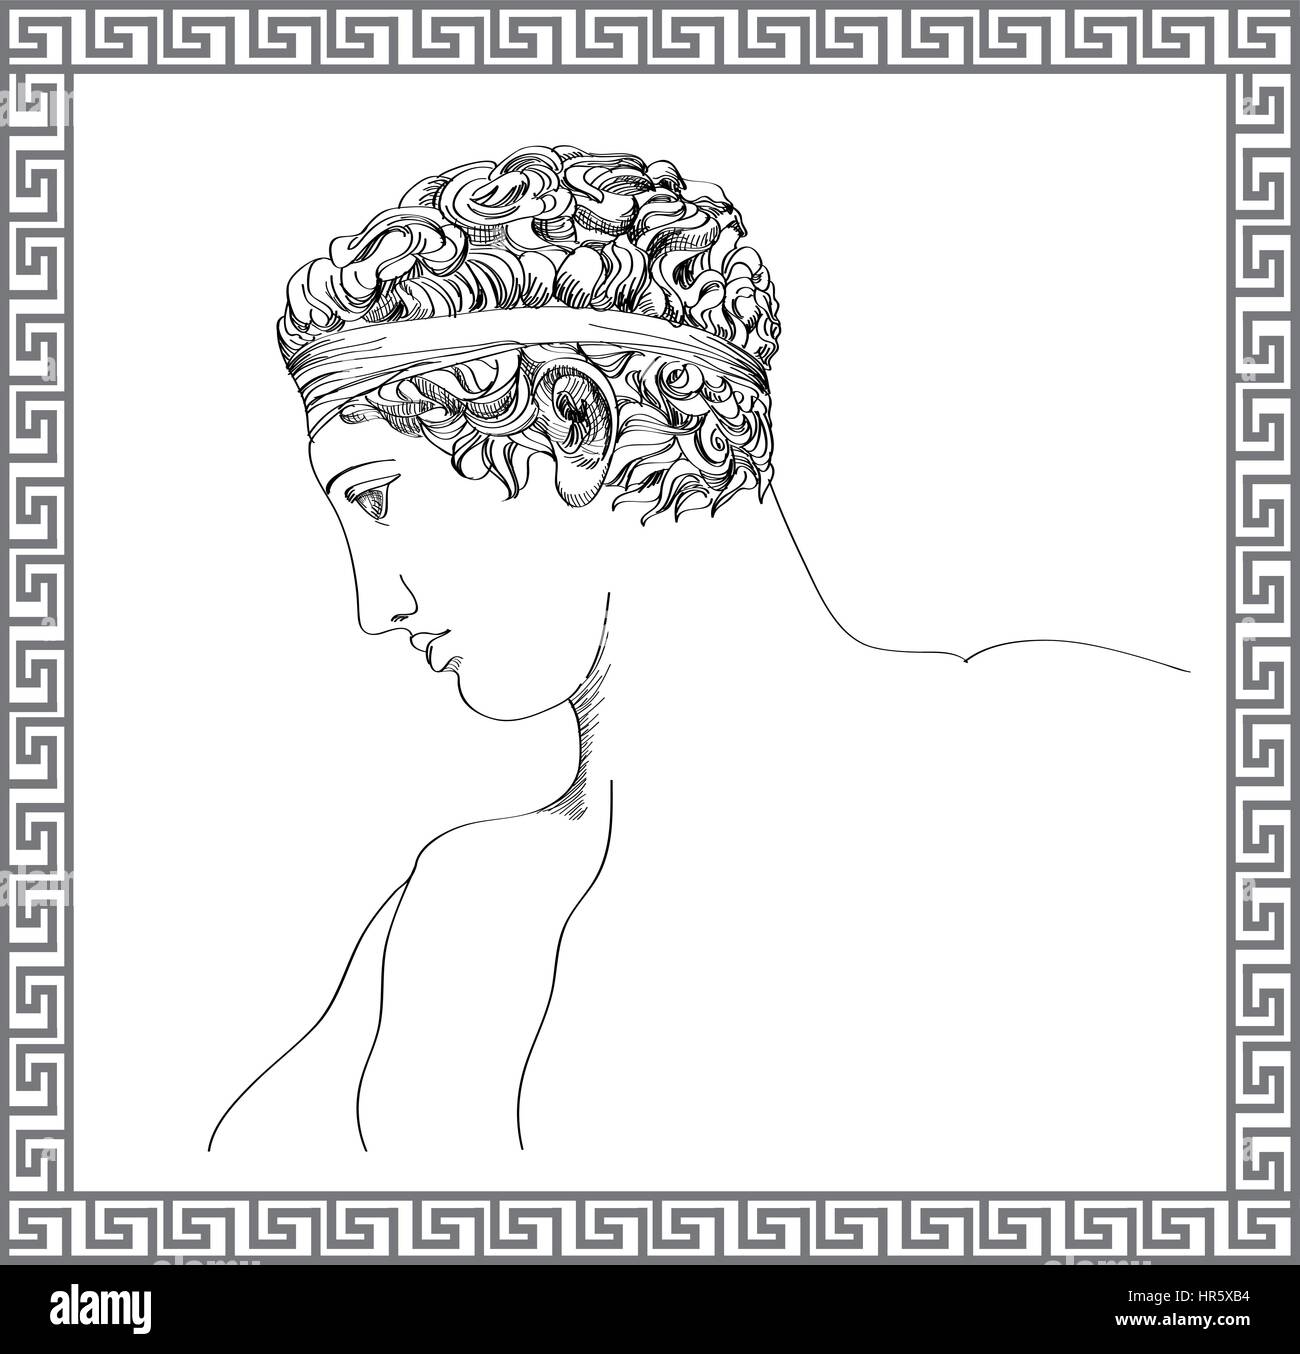 Sculpture grecque. vector hand drawn croquis. mans gravure portrait. billet Grèce illustration Illustration de Vecteur